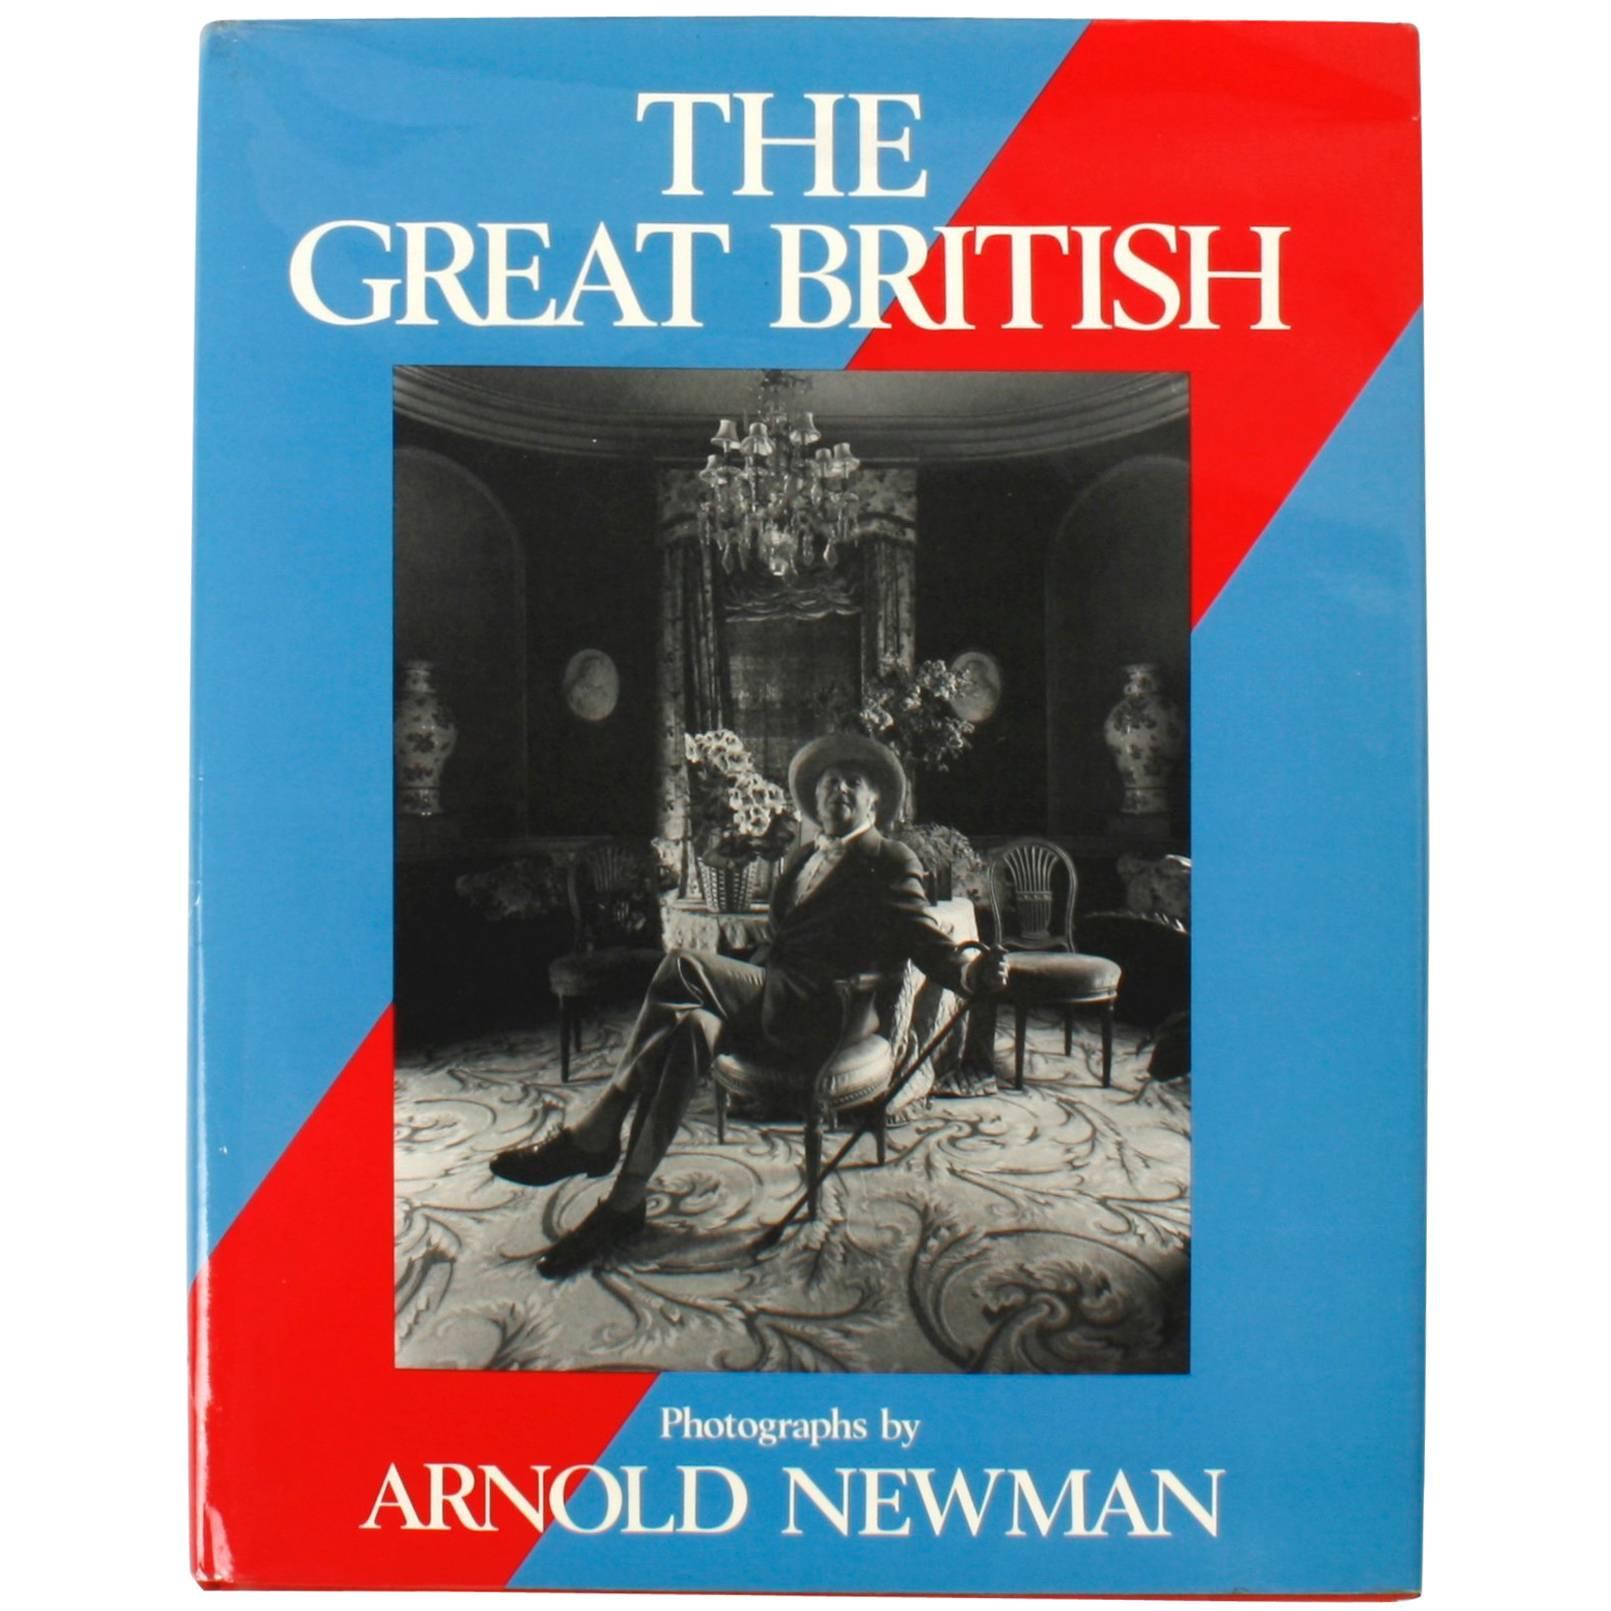 The Great British von Arnold Newman 1st Ed